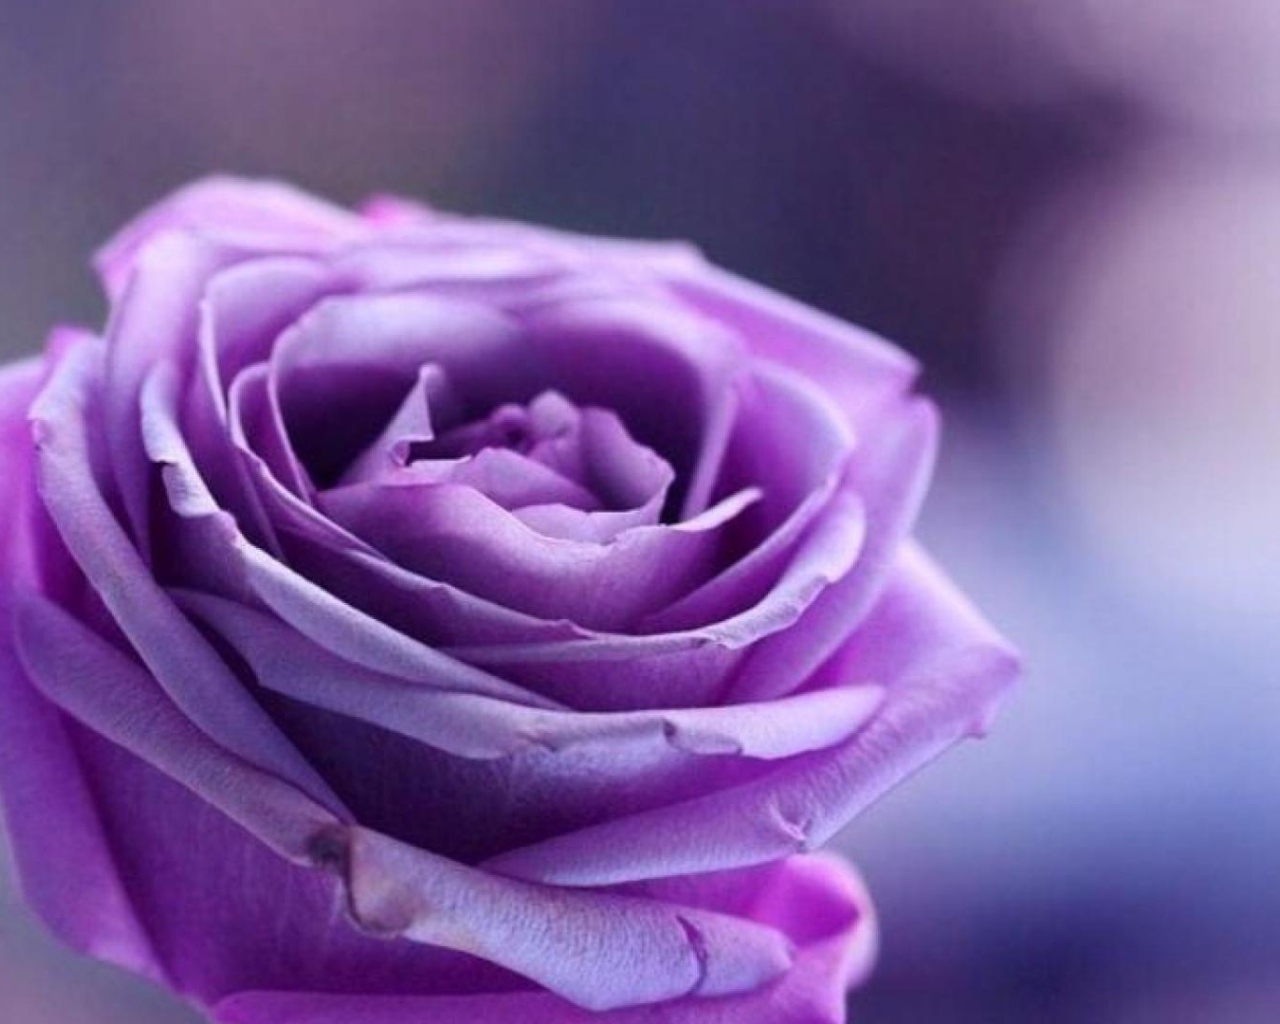 Purple rose on purple background